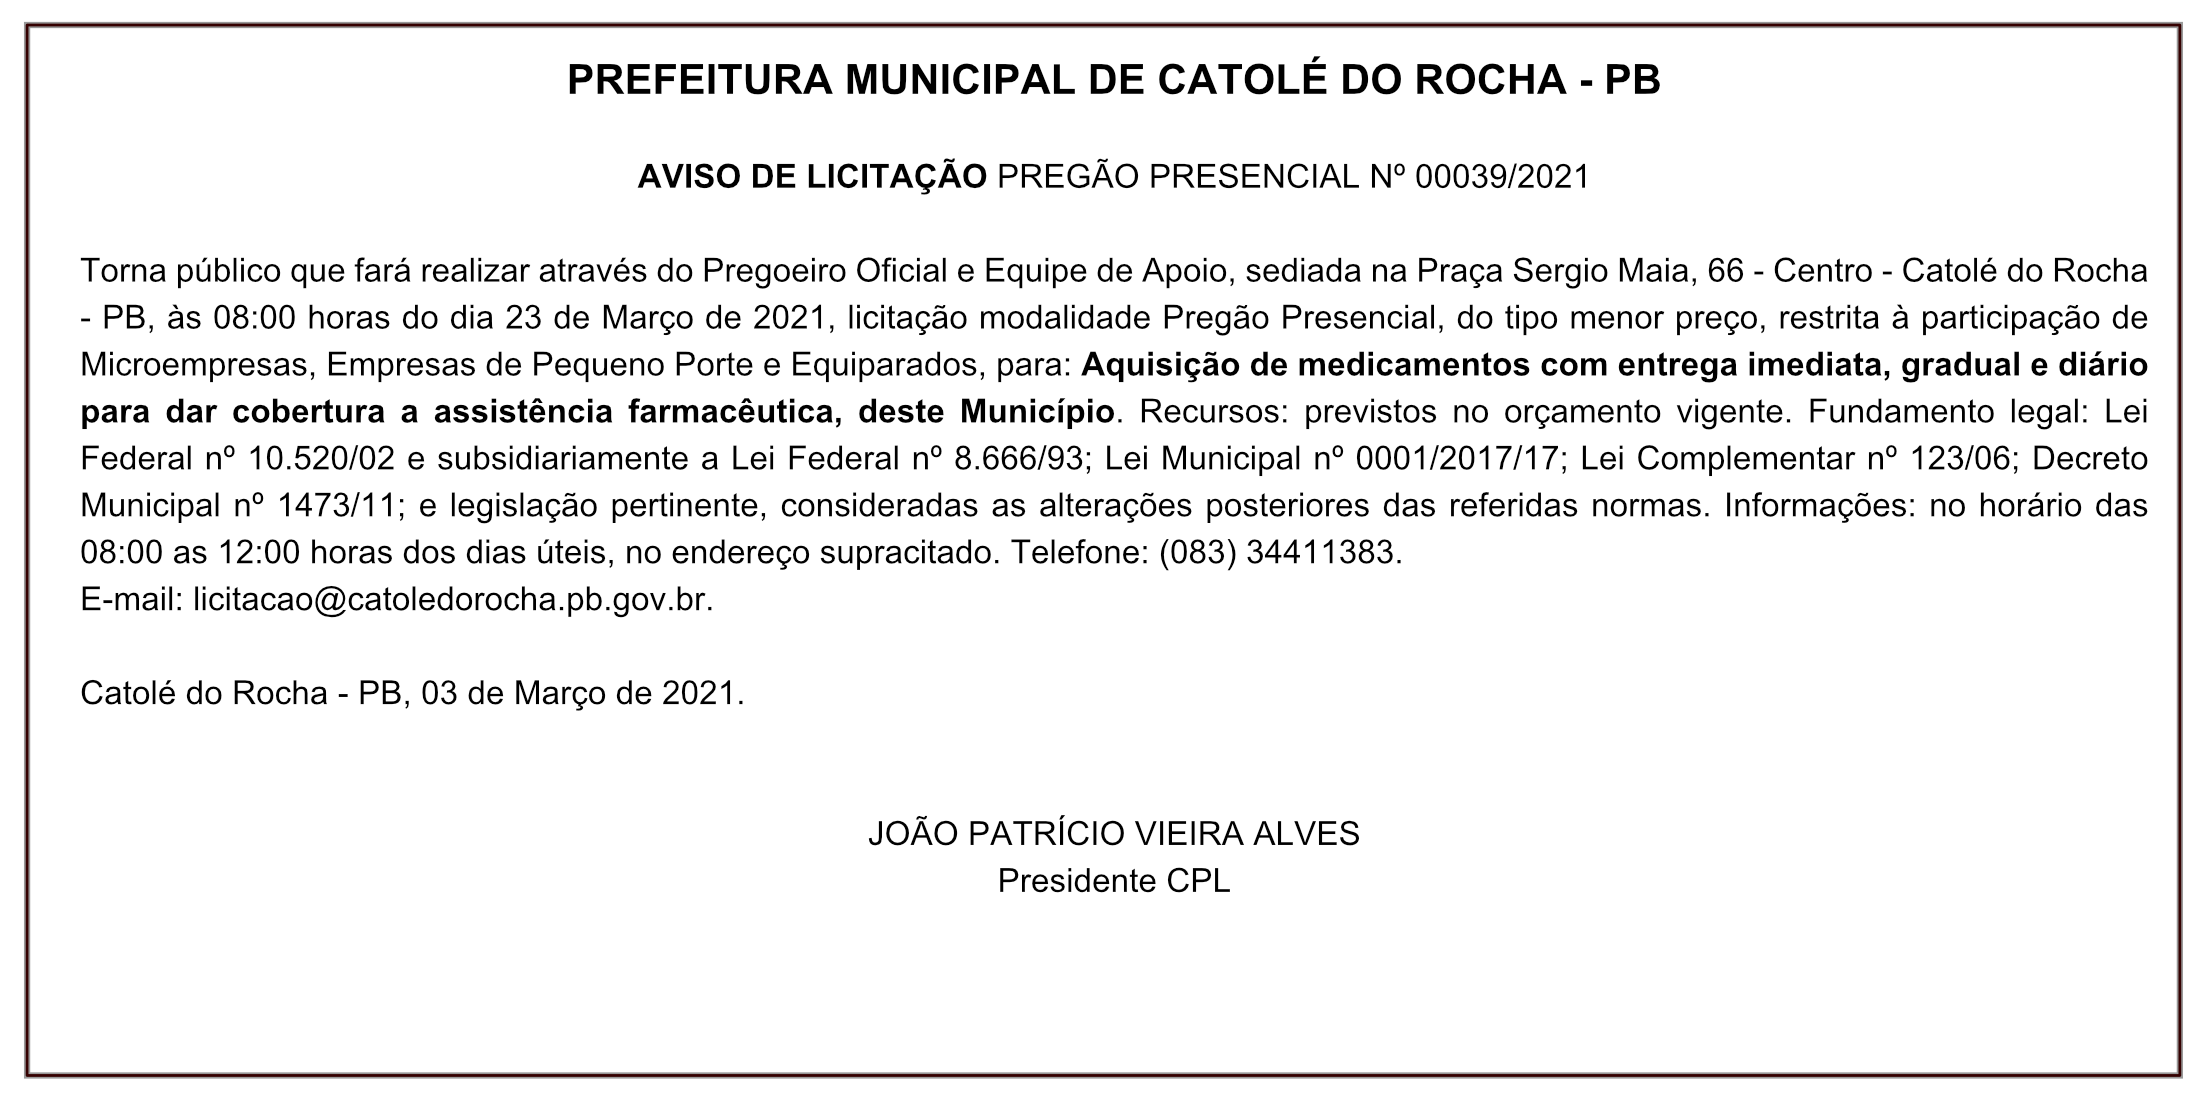 PREFEITURA MUNICIPAL DE CATOLÉ DO ROCHA – AVISO DE LICITAÇÃO – PREGÃO PRESENCIAL Nº 00039/2021